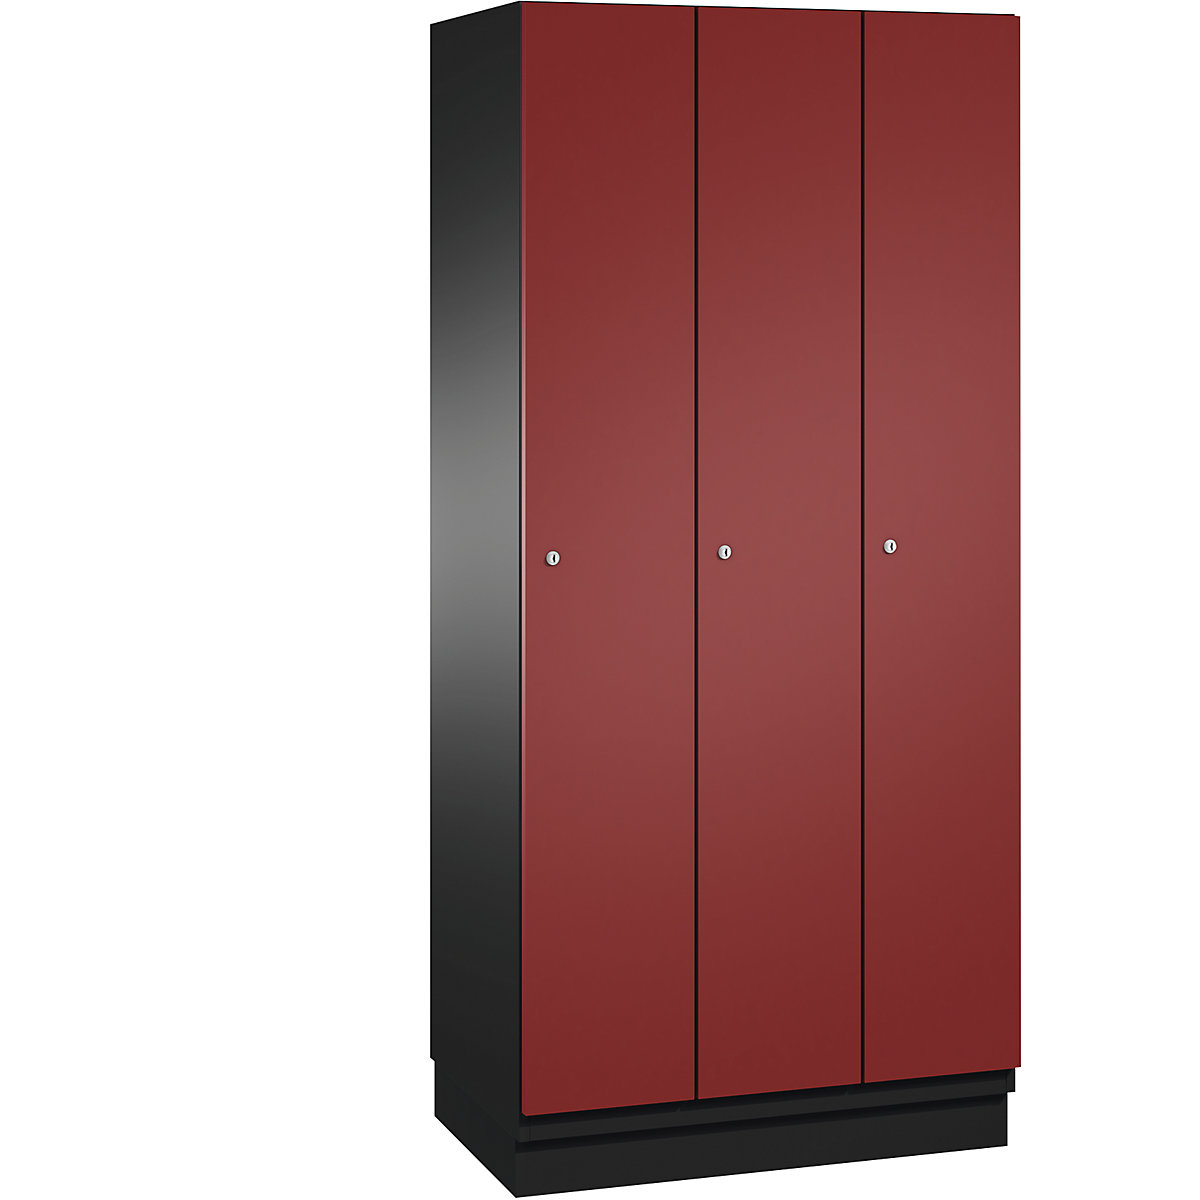 CAMBIO cloakroom locker with sheet steel doors – C+P